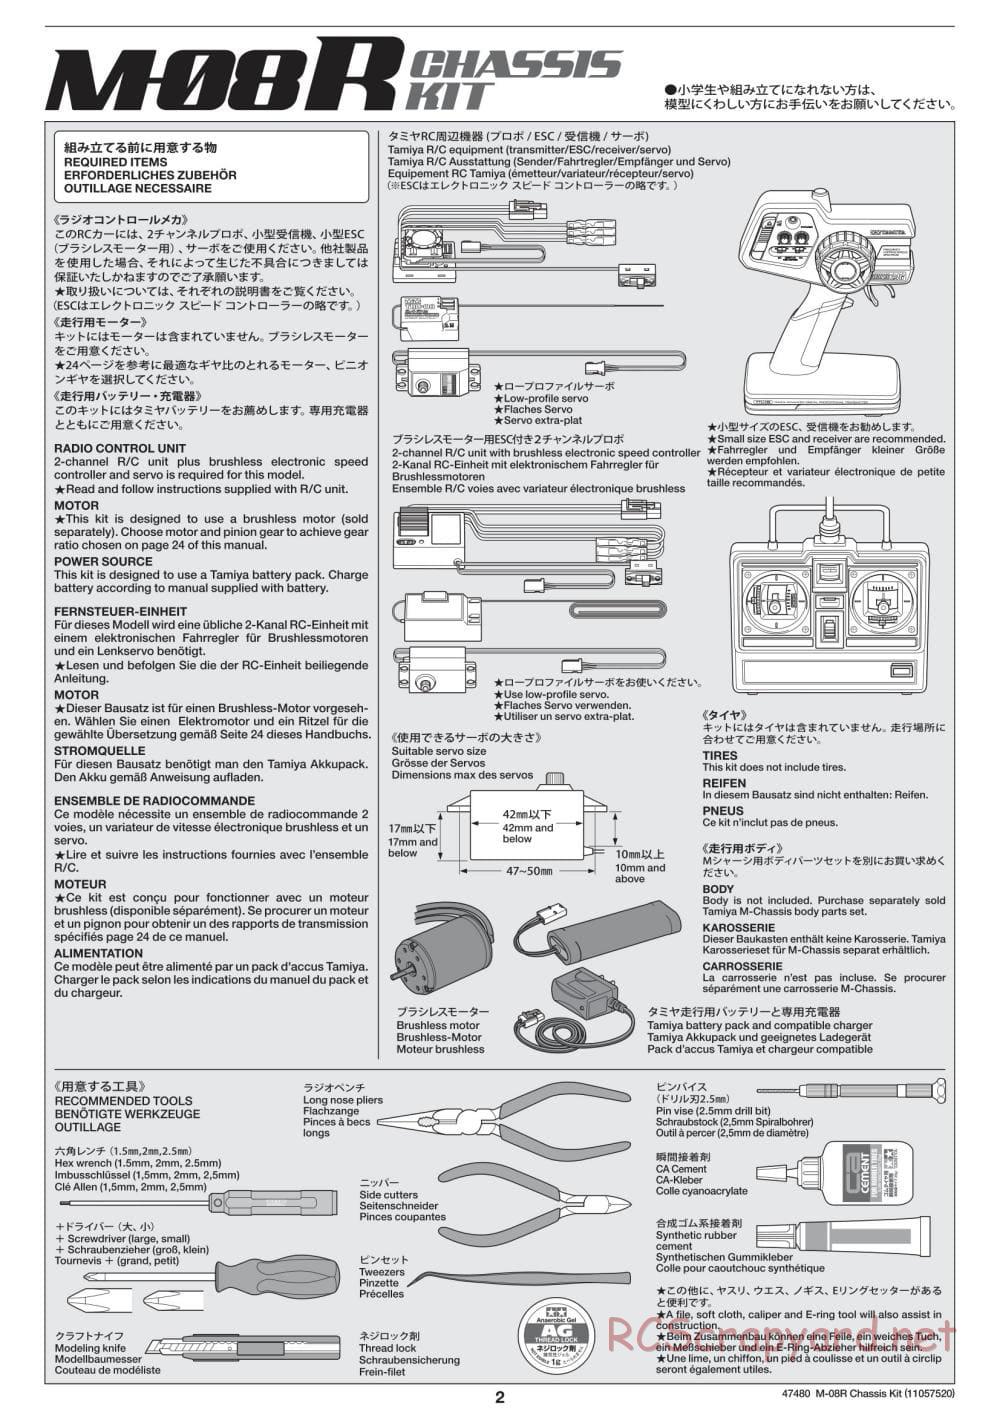 Tamiya - M-08R Chassis - Manual - Page 2